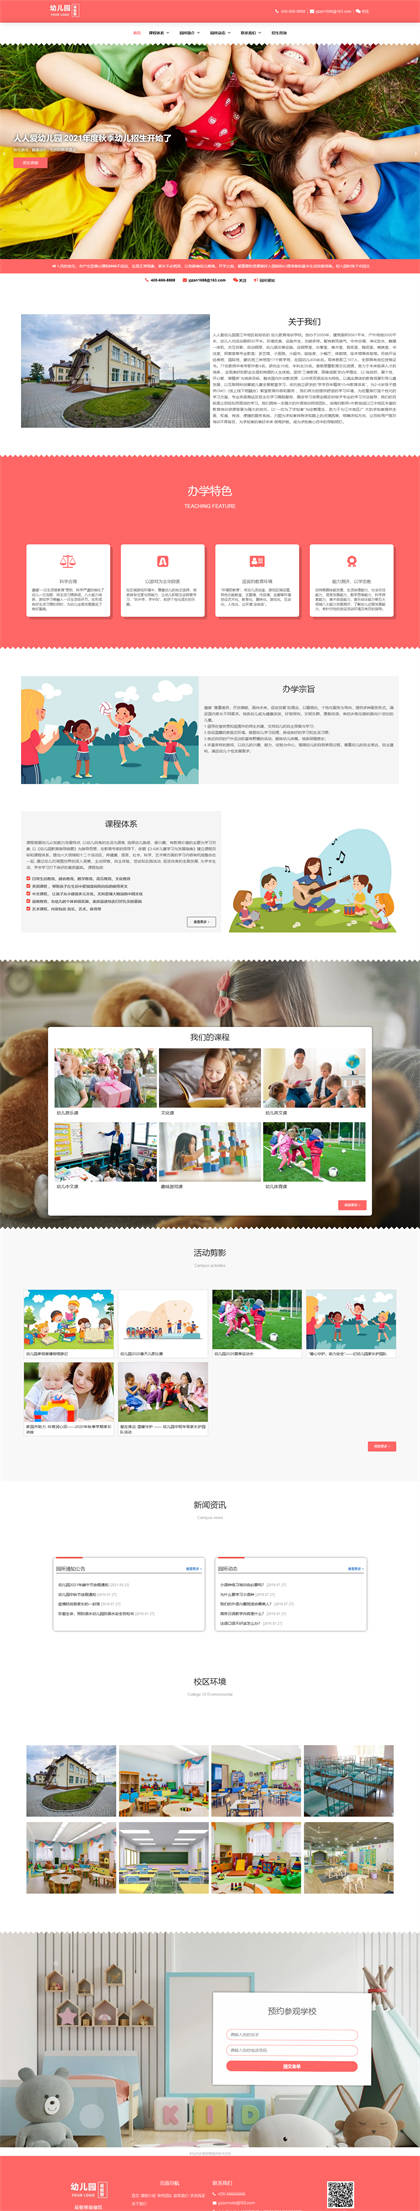 幼儿园-托儿所-早教中心-幼儿培训-早教机构网站模板网站模板预览图片